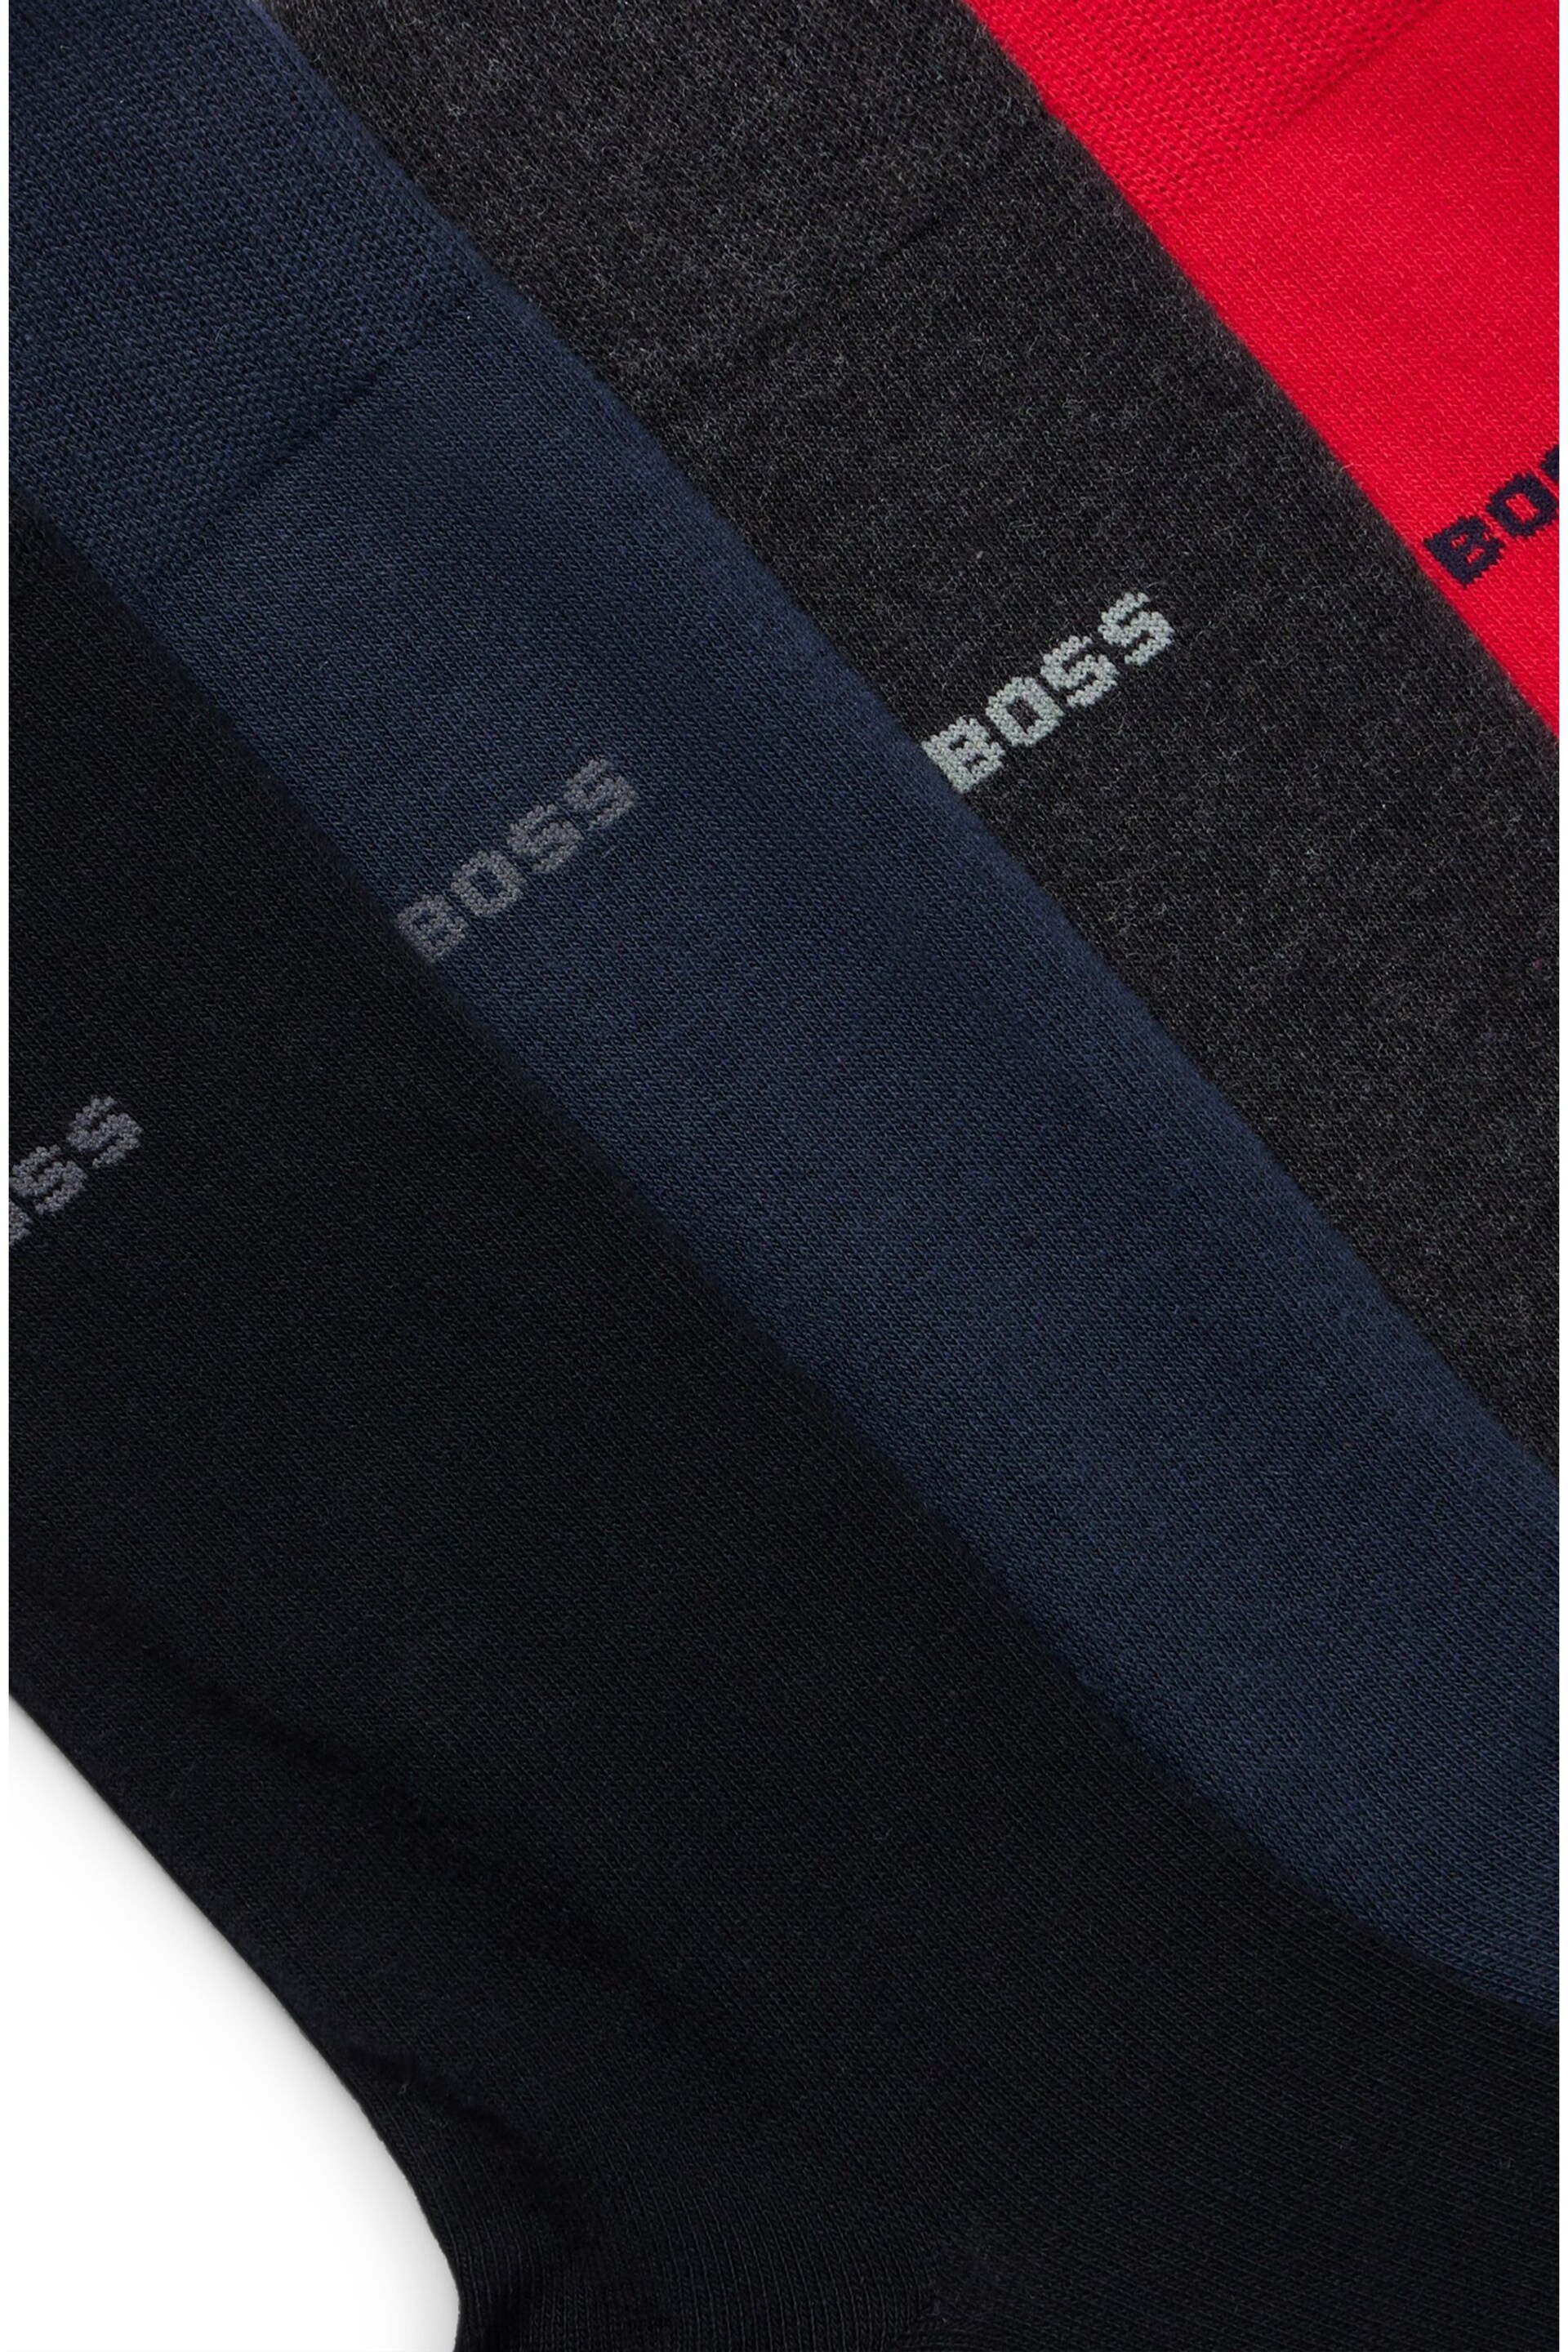 BOSS Red Uni Socks Gift Set 4 Pack - Image 2 of 3